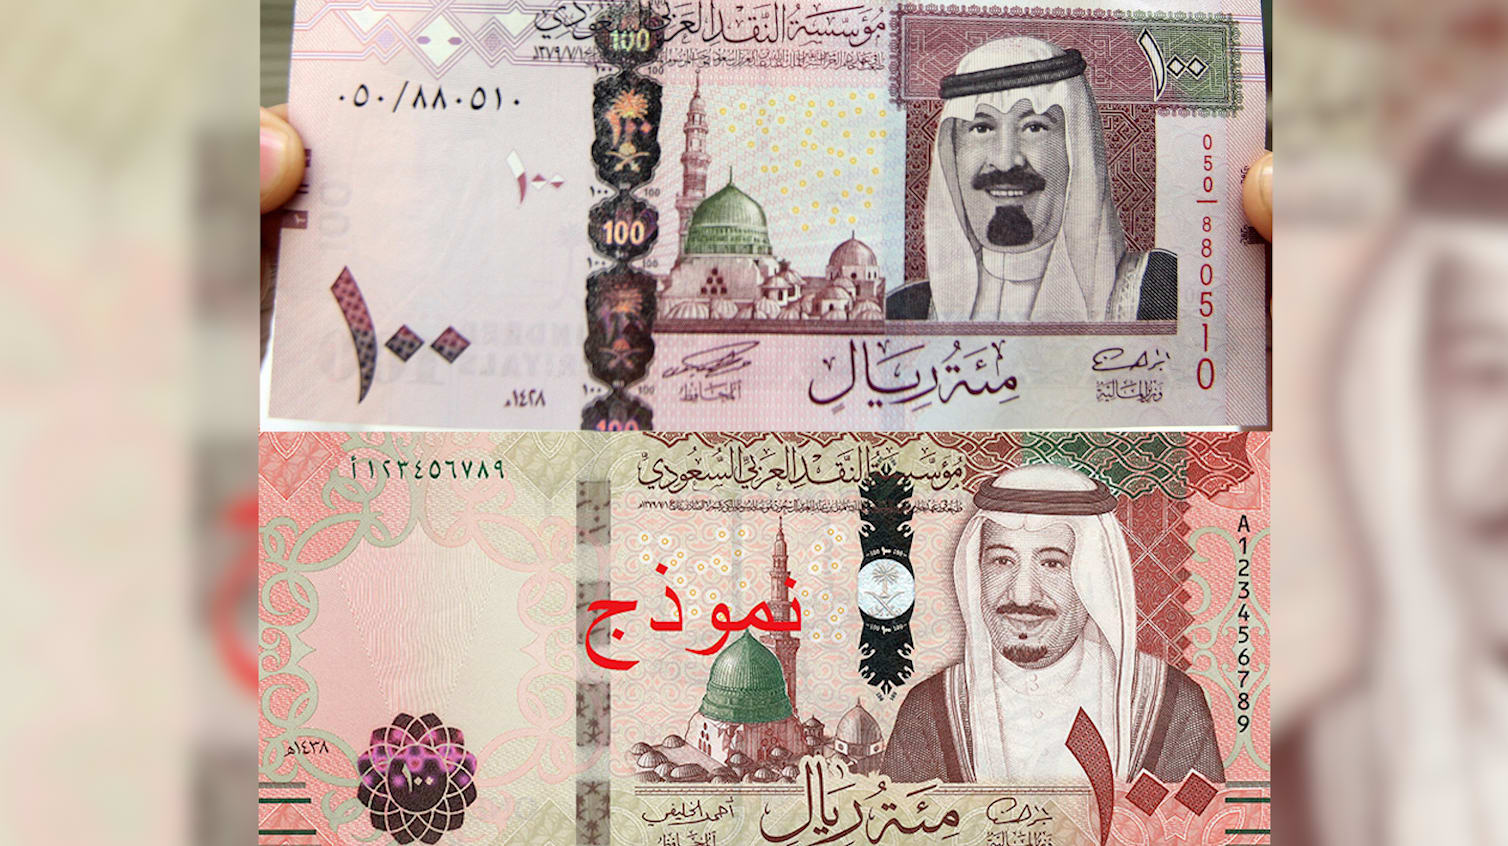 السعودية تنفي إلغاء الإصدار الخامس لعملتها مع نزول السادس بعهد الملك سلمان